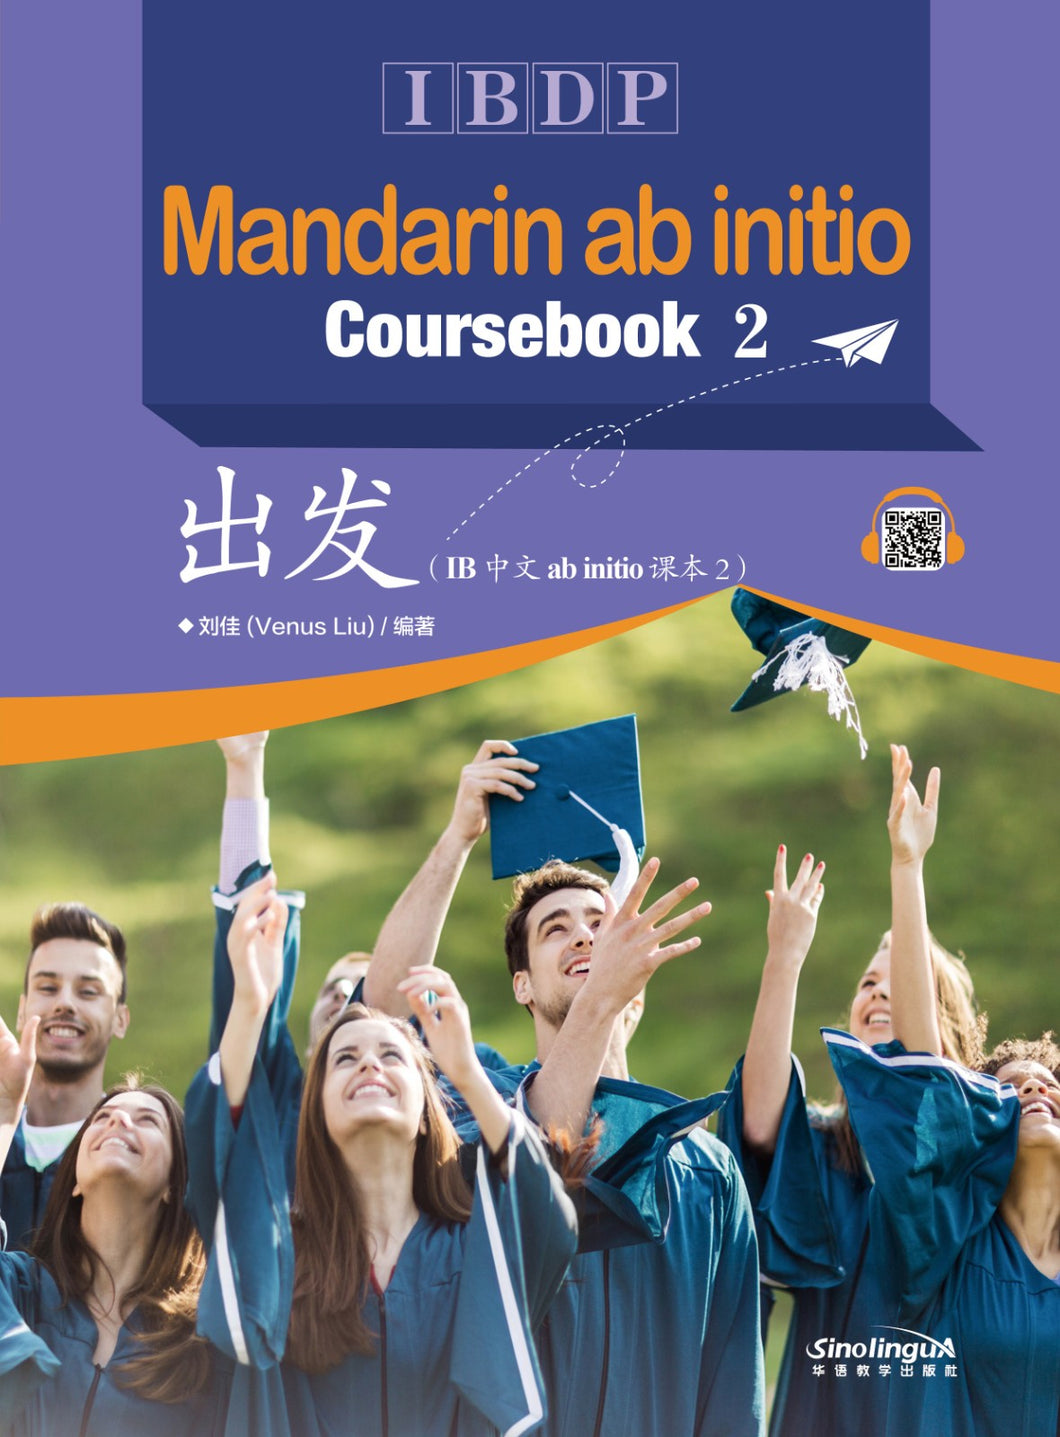 Mandarin ab initio Coursebook 2